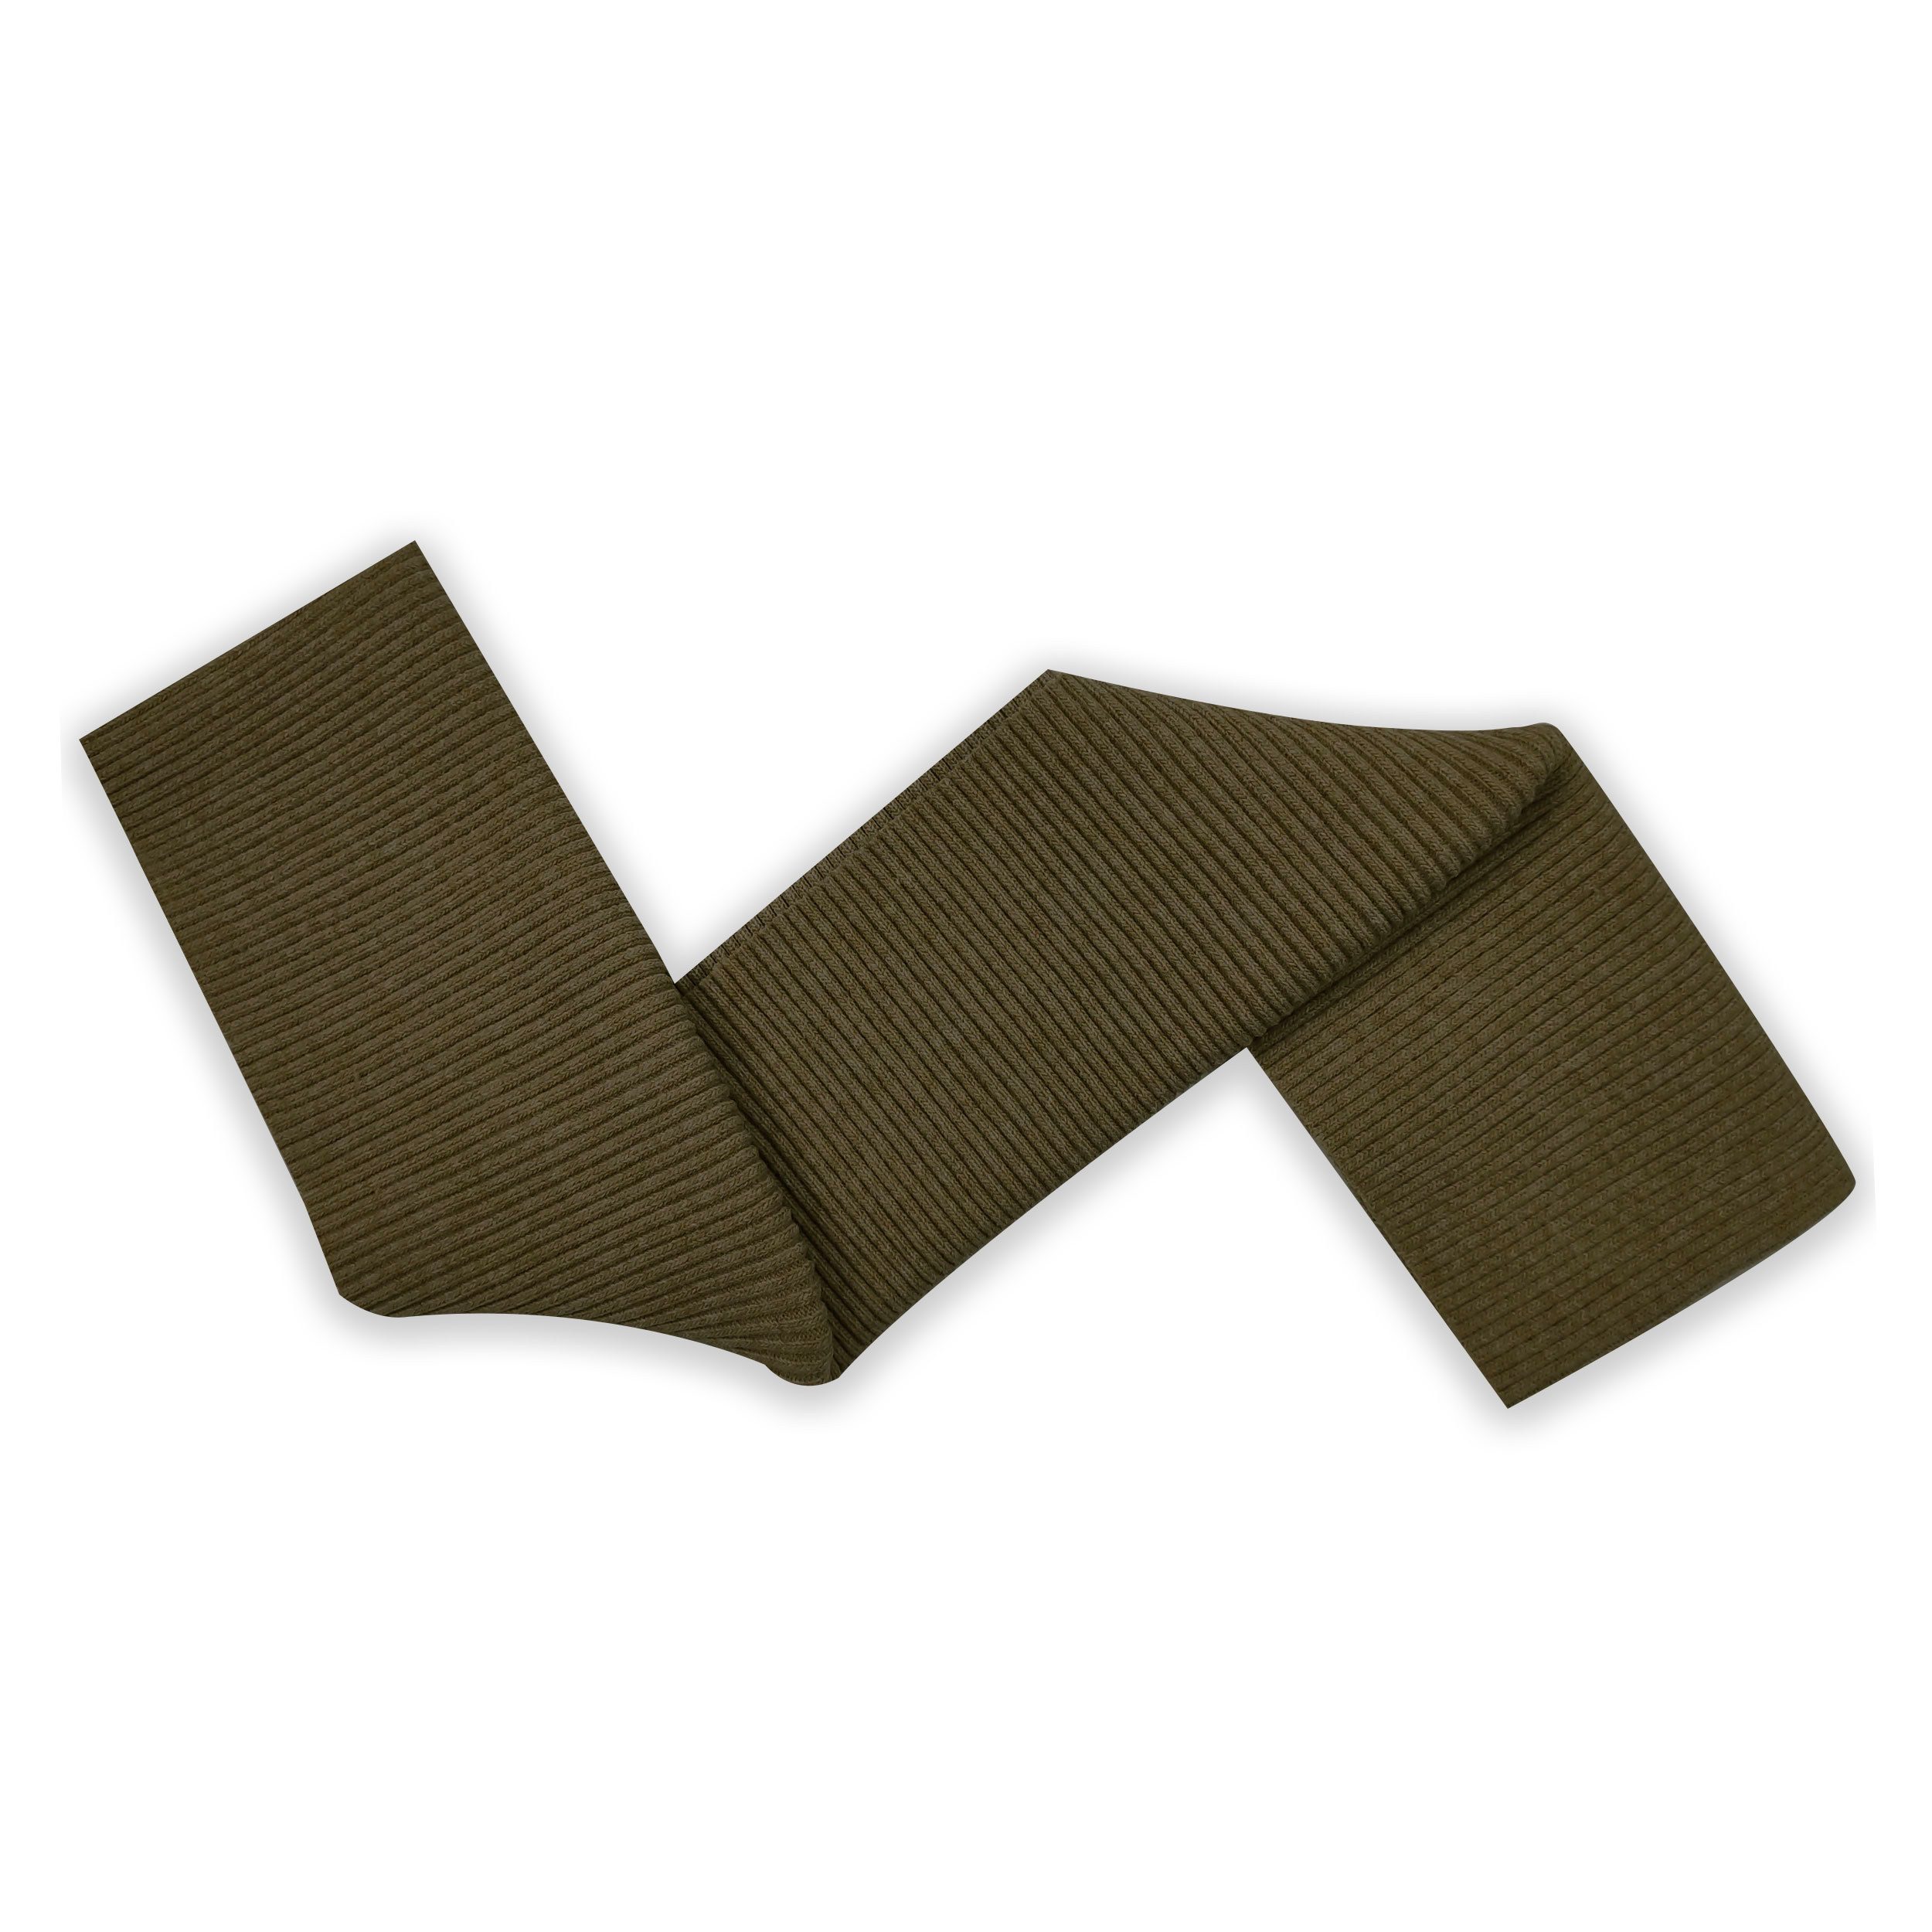 Bordo maglia doppio spessore per polsini girovita e gambali verde militare